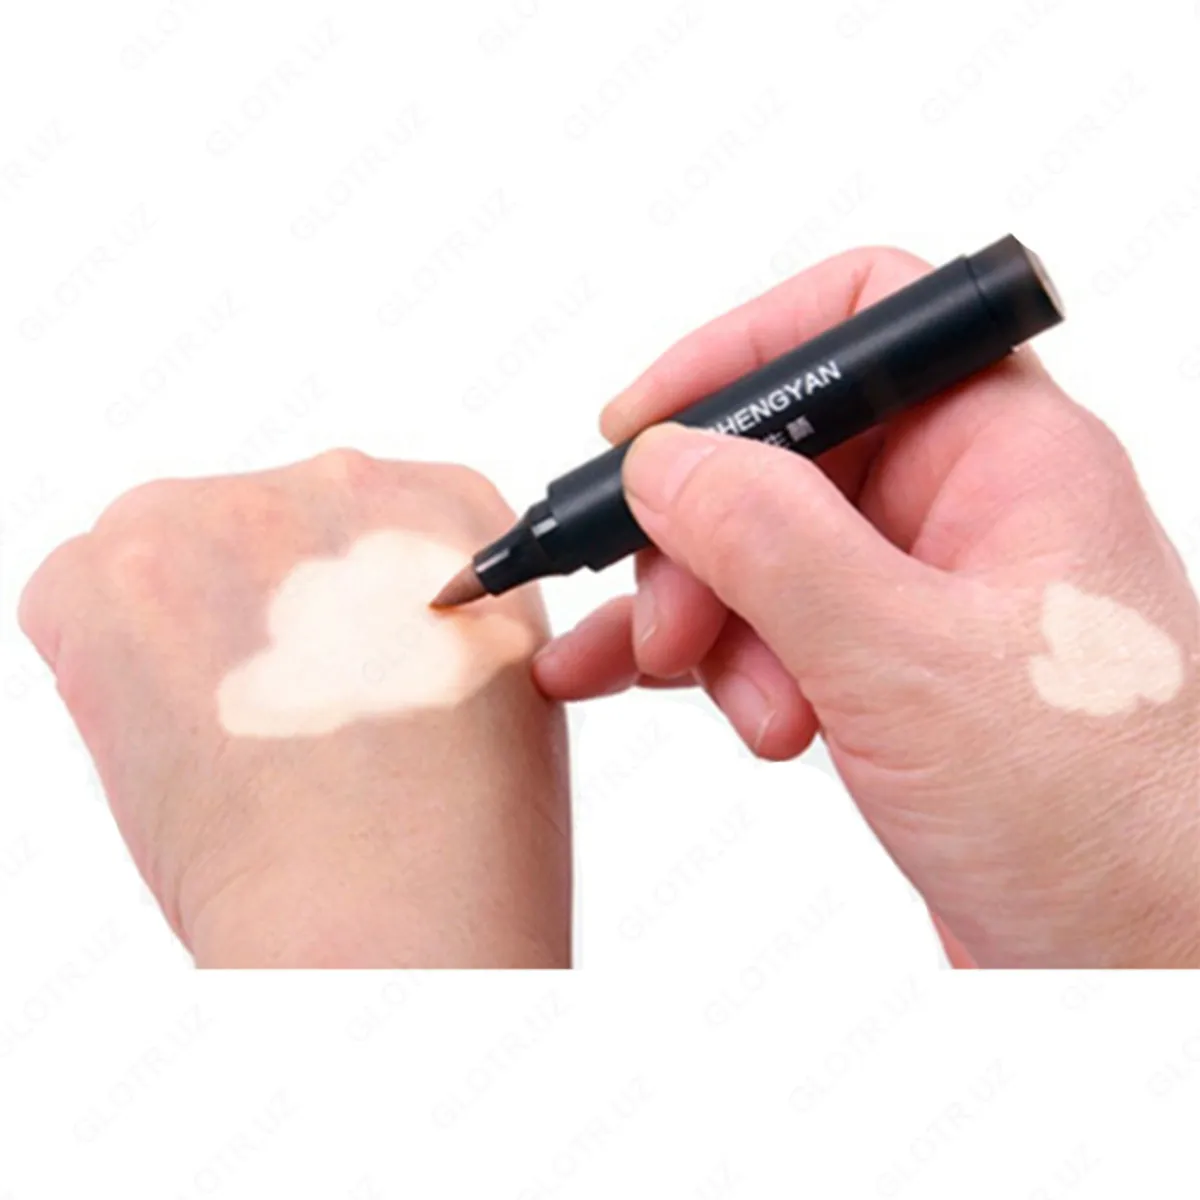 Zanderm spot vitiligo uchun aplikatori#1